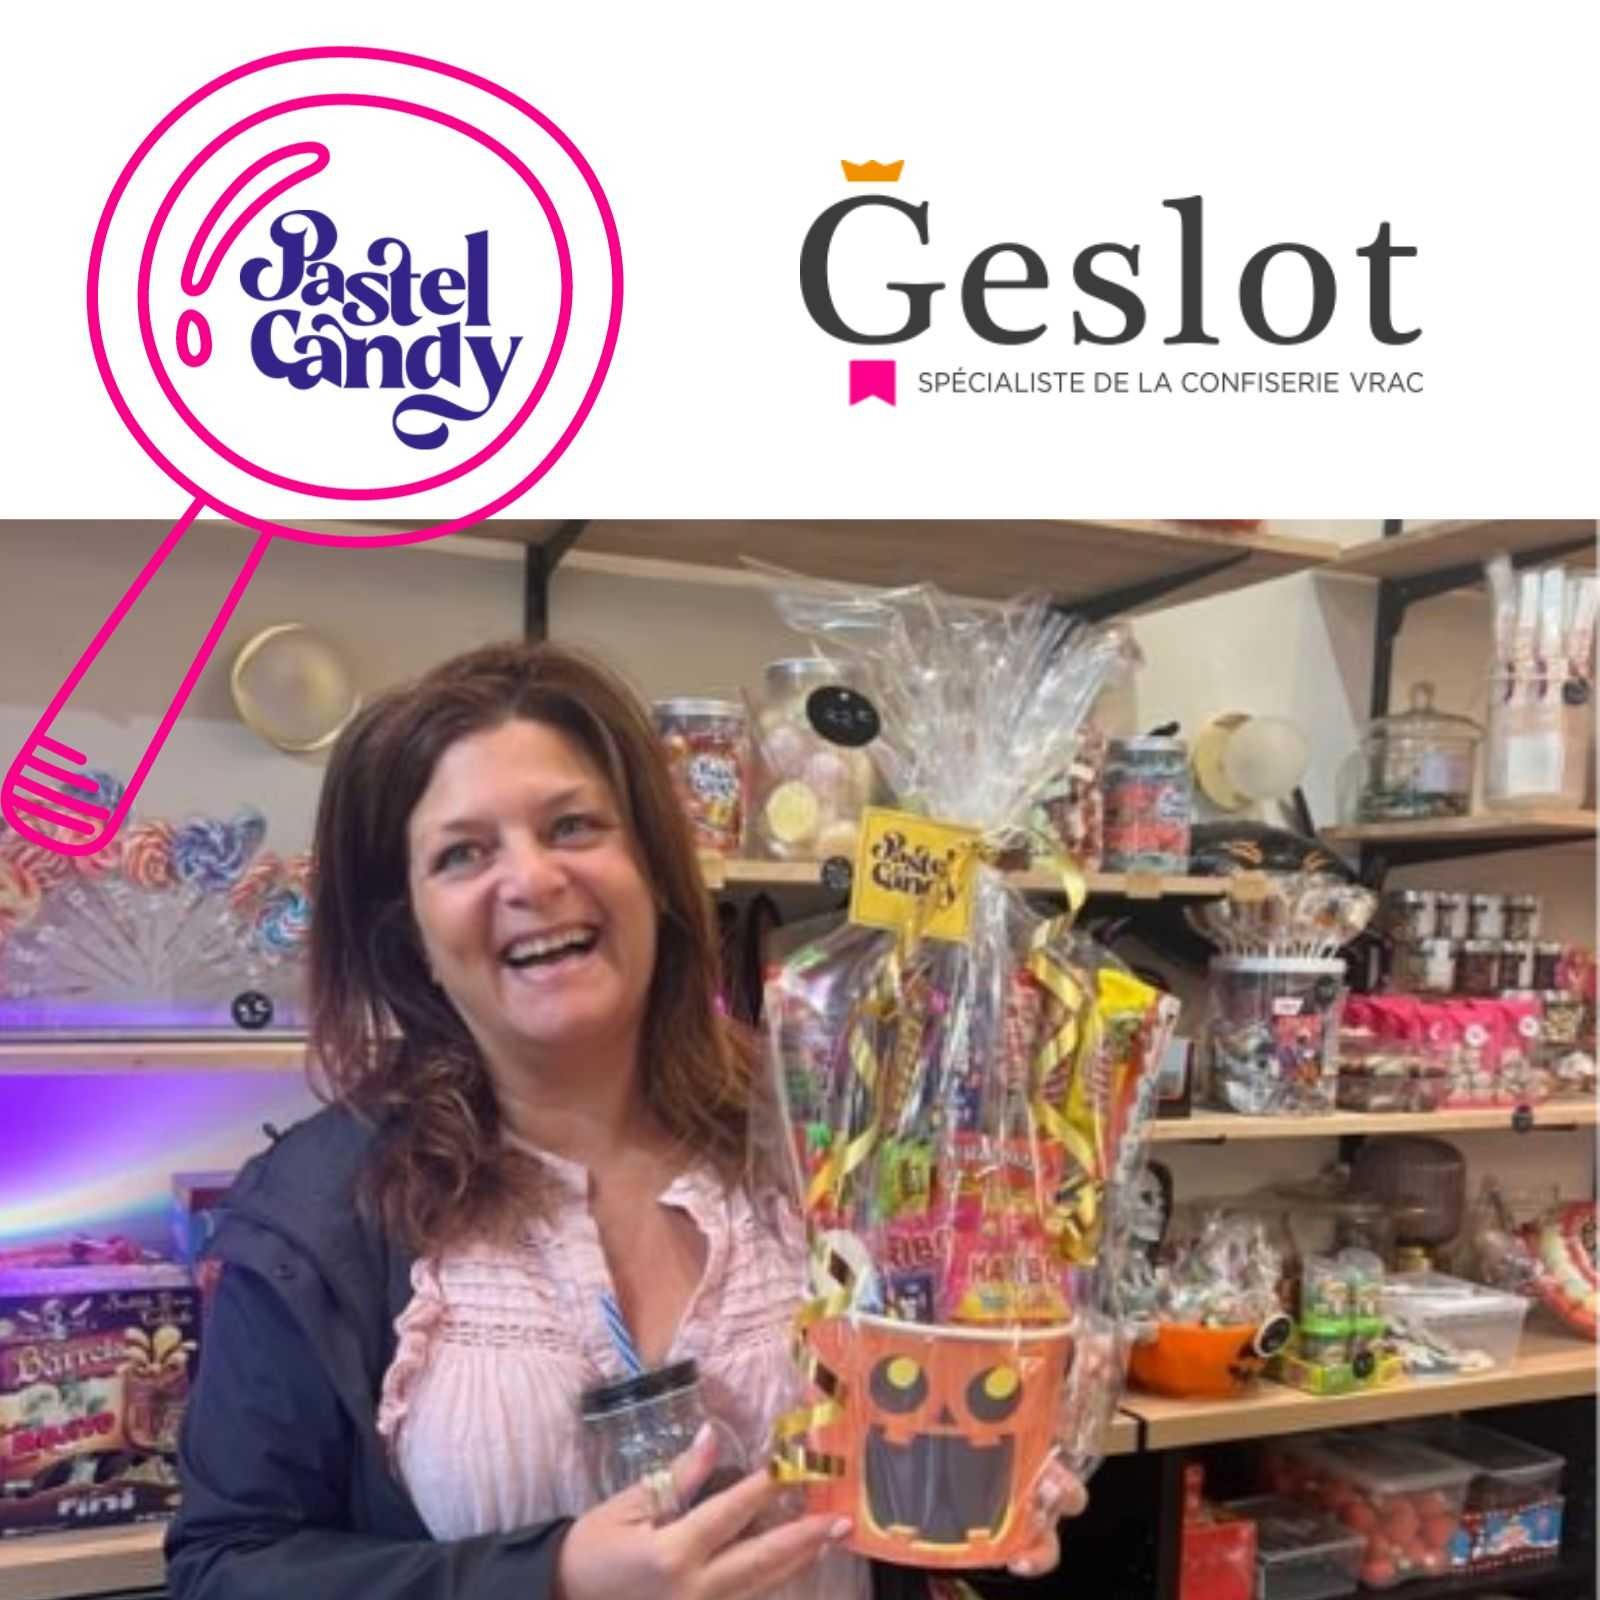 Découvrez l'expérience client chez Geslot : les révélations de Magali, créatrice de Pastel Candy 